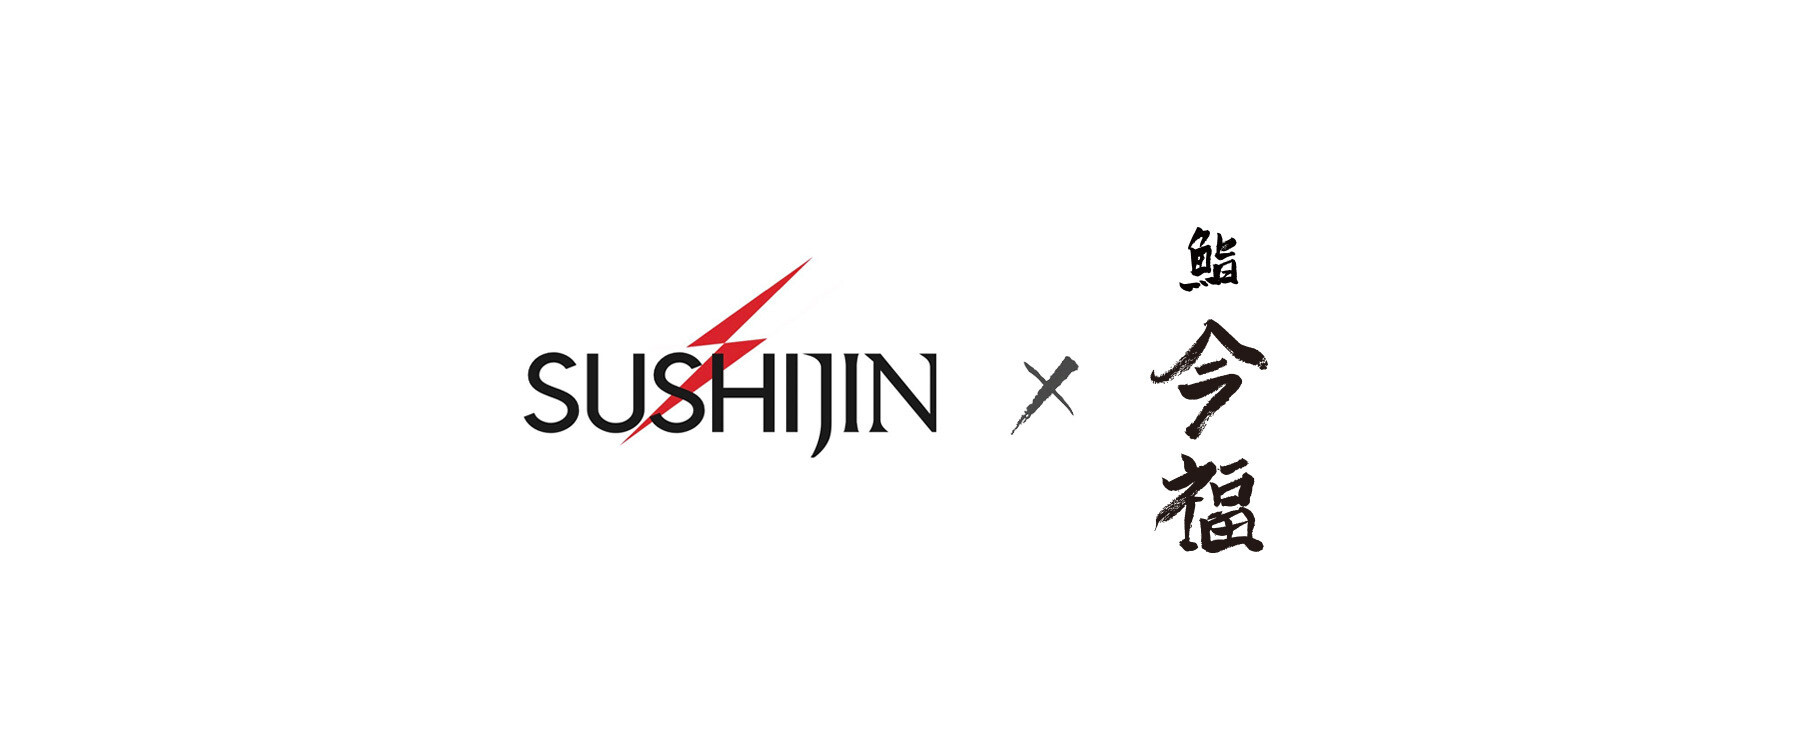 【Finished】[Noto Support Temporary Restaurant] Sushijin @ Sushi Imafuku's image